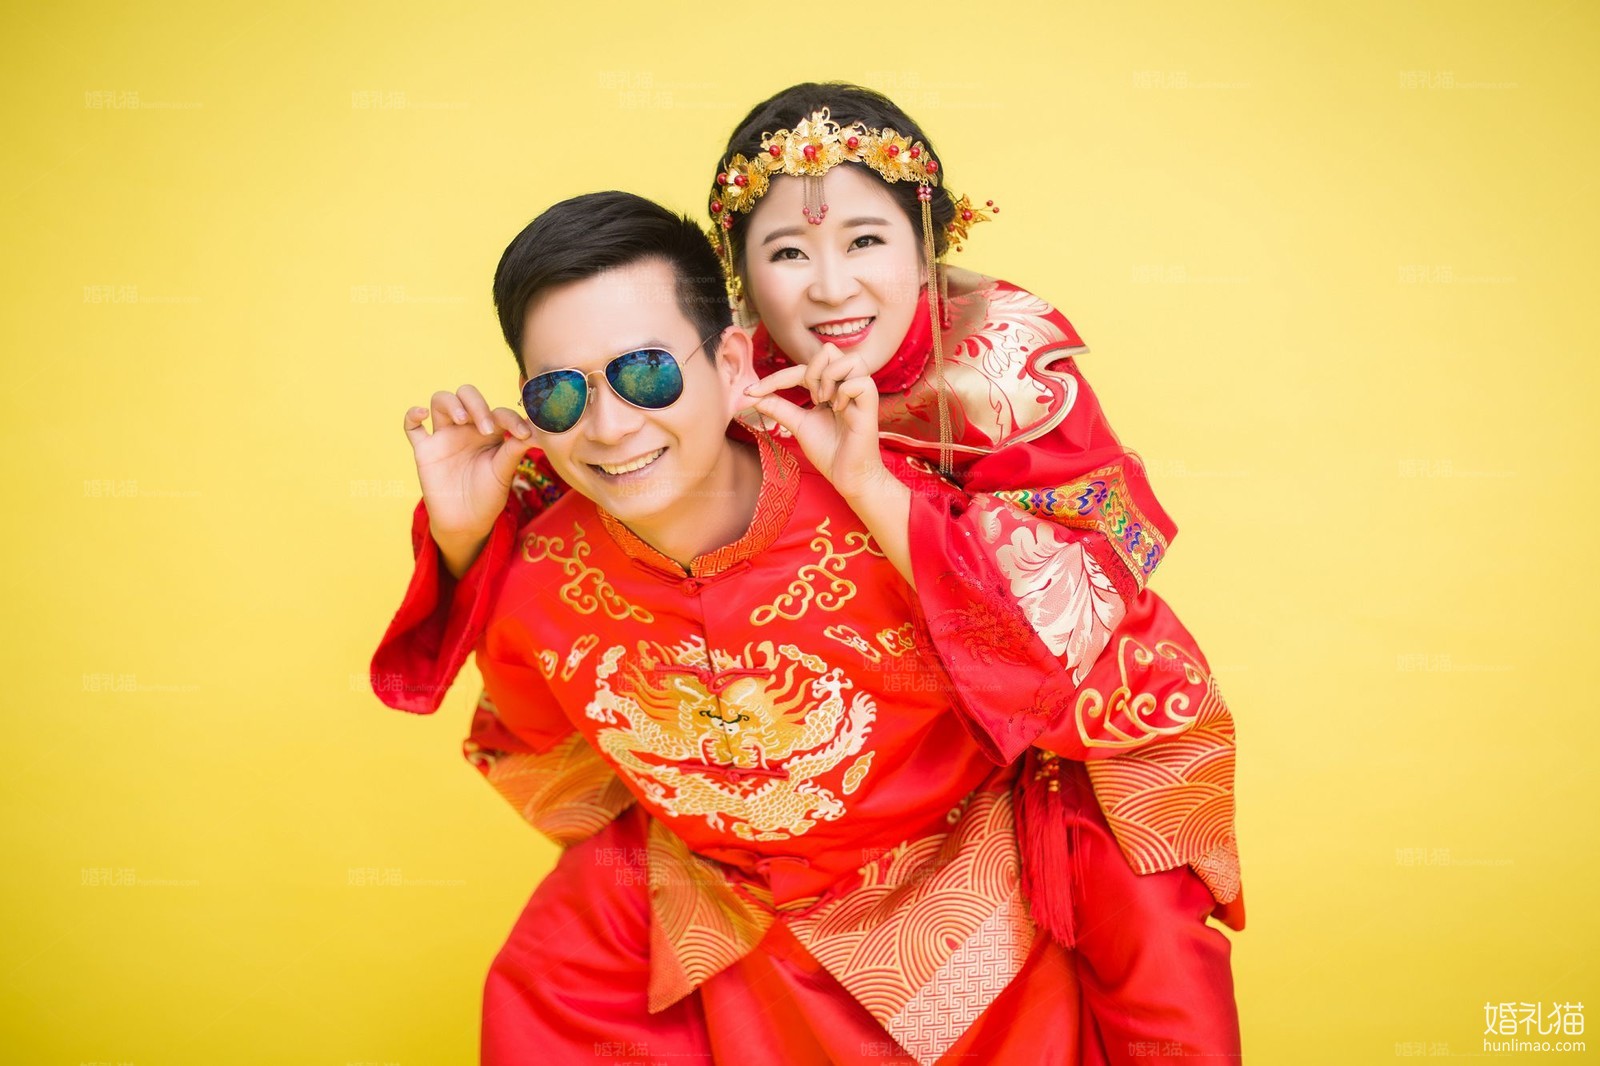 中国风婚纱照图片|纯色背景结婚照,[中国风, 纯色背景],江门婚纱照,婚纱照图片